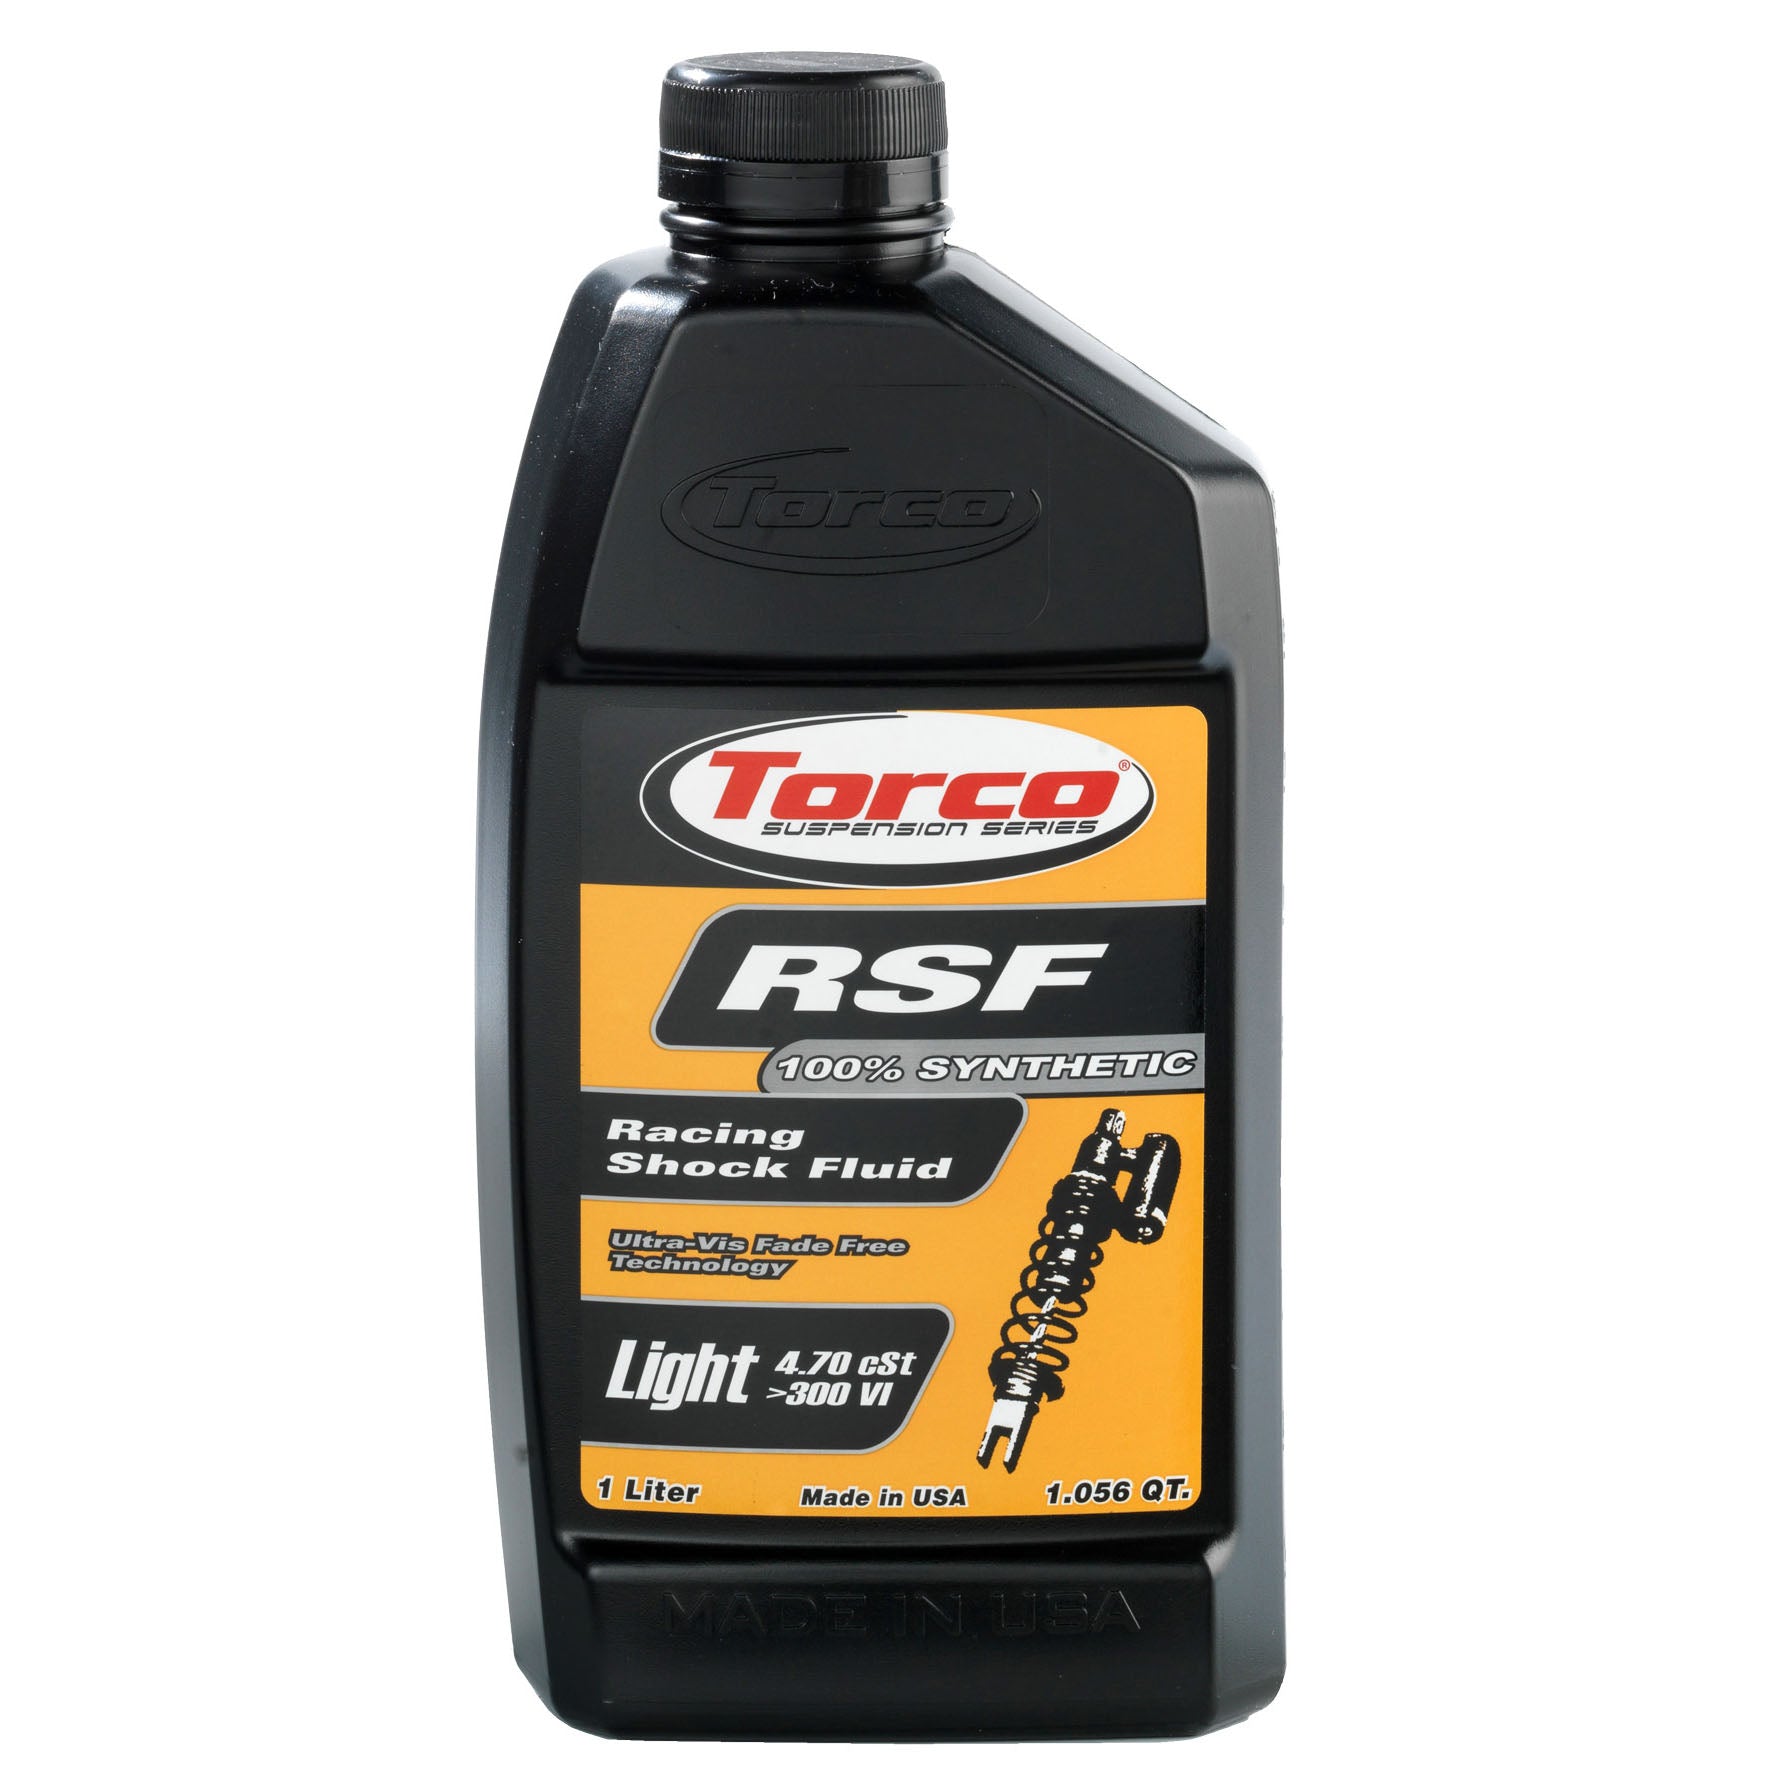 RSF Racing Shock Fluids light